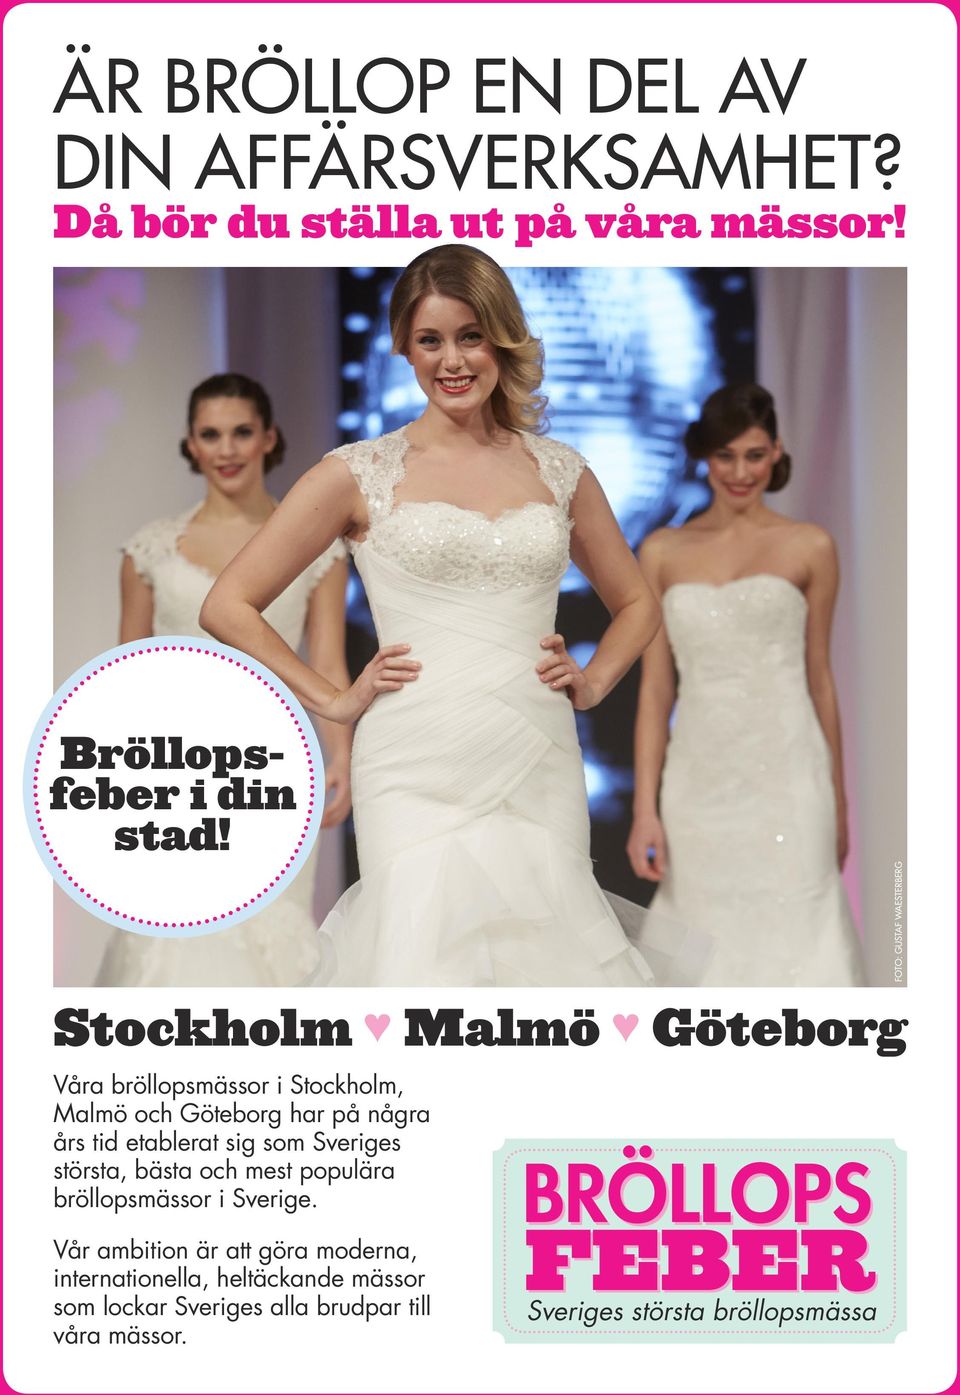 sig som Sveriges största, bästa och mest populära bröllopsmässor i Sverige.